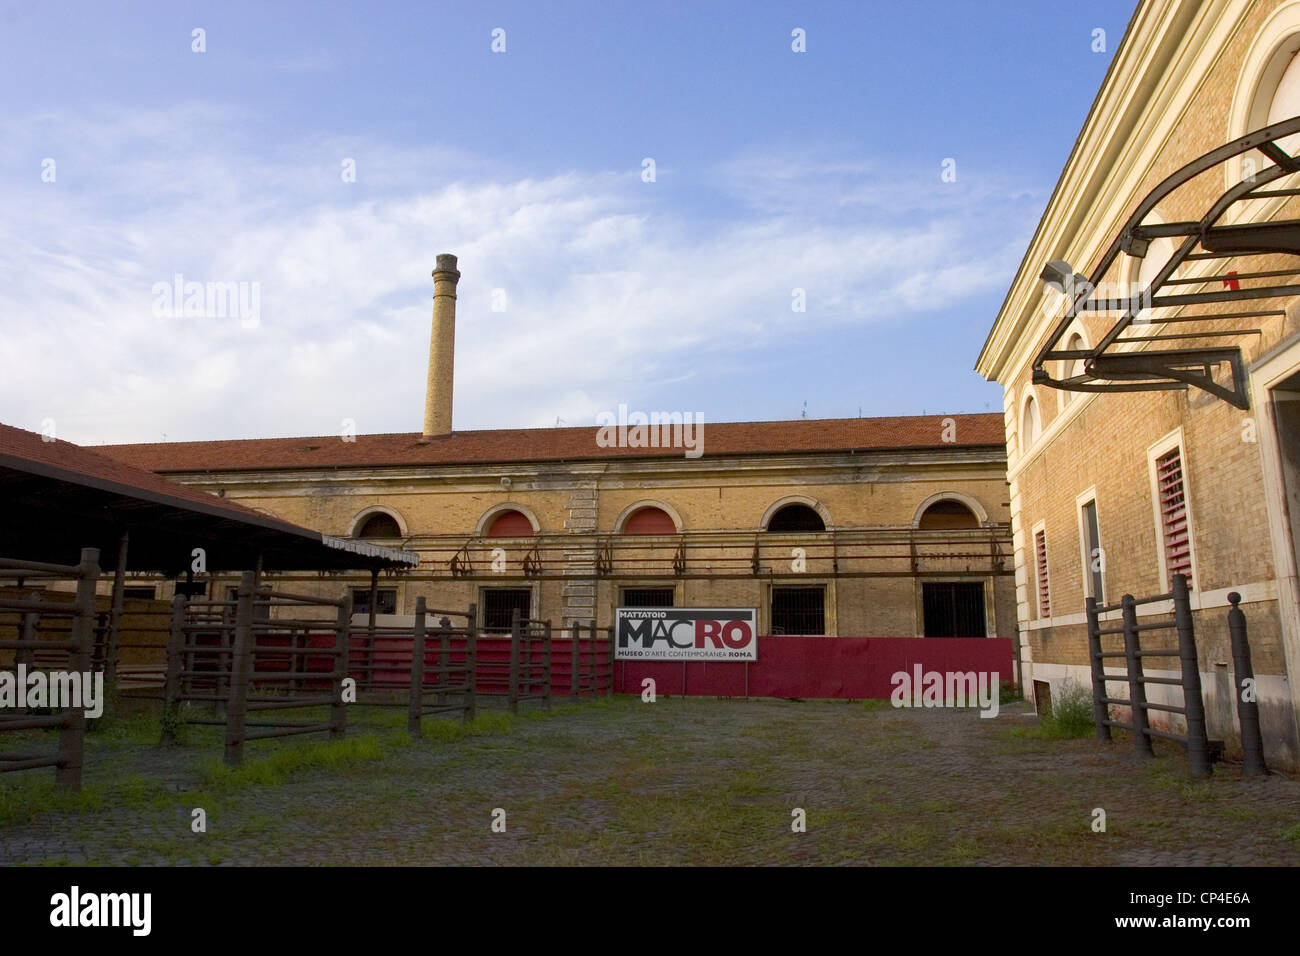 Lazio - Roma, Macro Museum (Museo d'Arte Contemporani Roma). Detachment at the former slaughterhouse in Testaccio Stock Photo